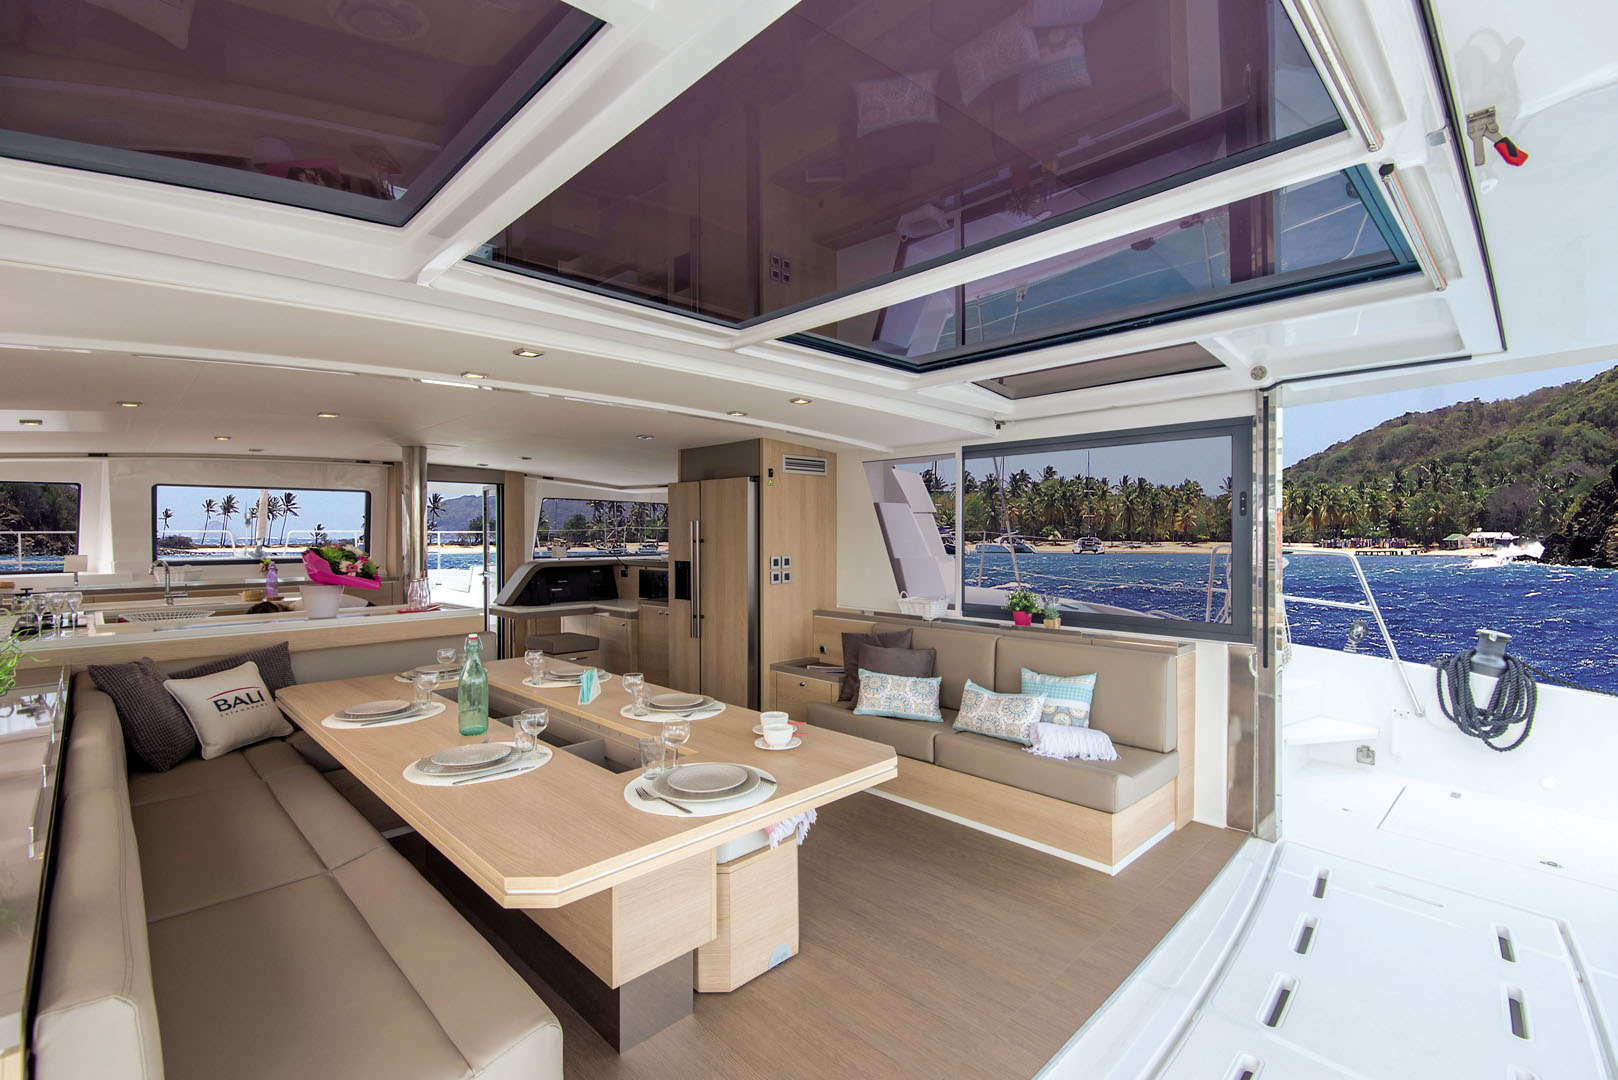 Bali 5.4 - 4 + 1 cab. - Luxury yacht charter Bahamas & Boat hire in Bahamas New Providence Nassau Palm Cay One Marina 5